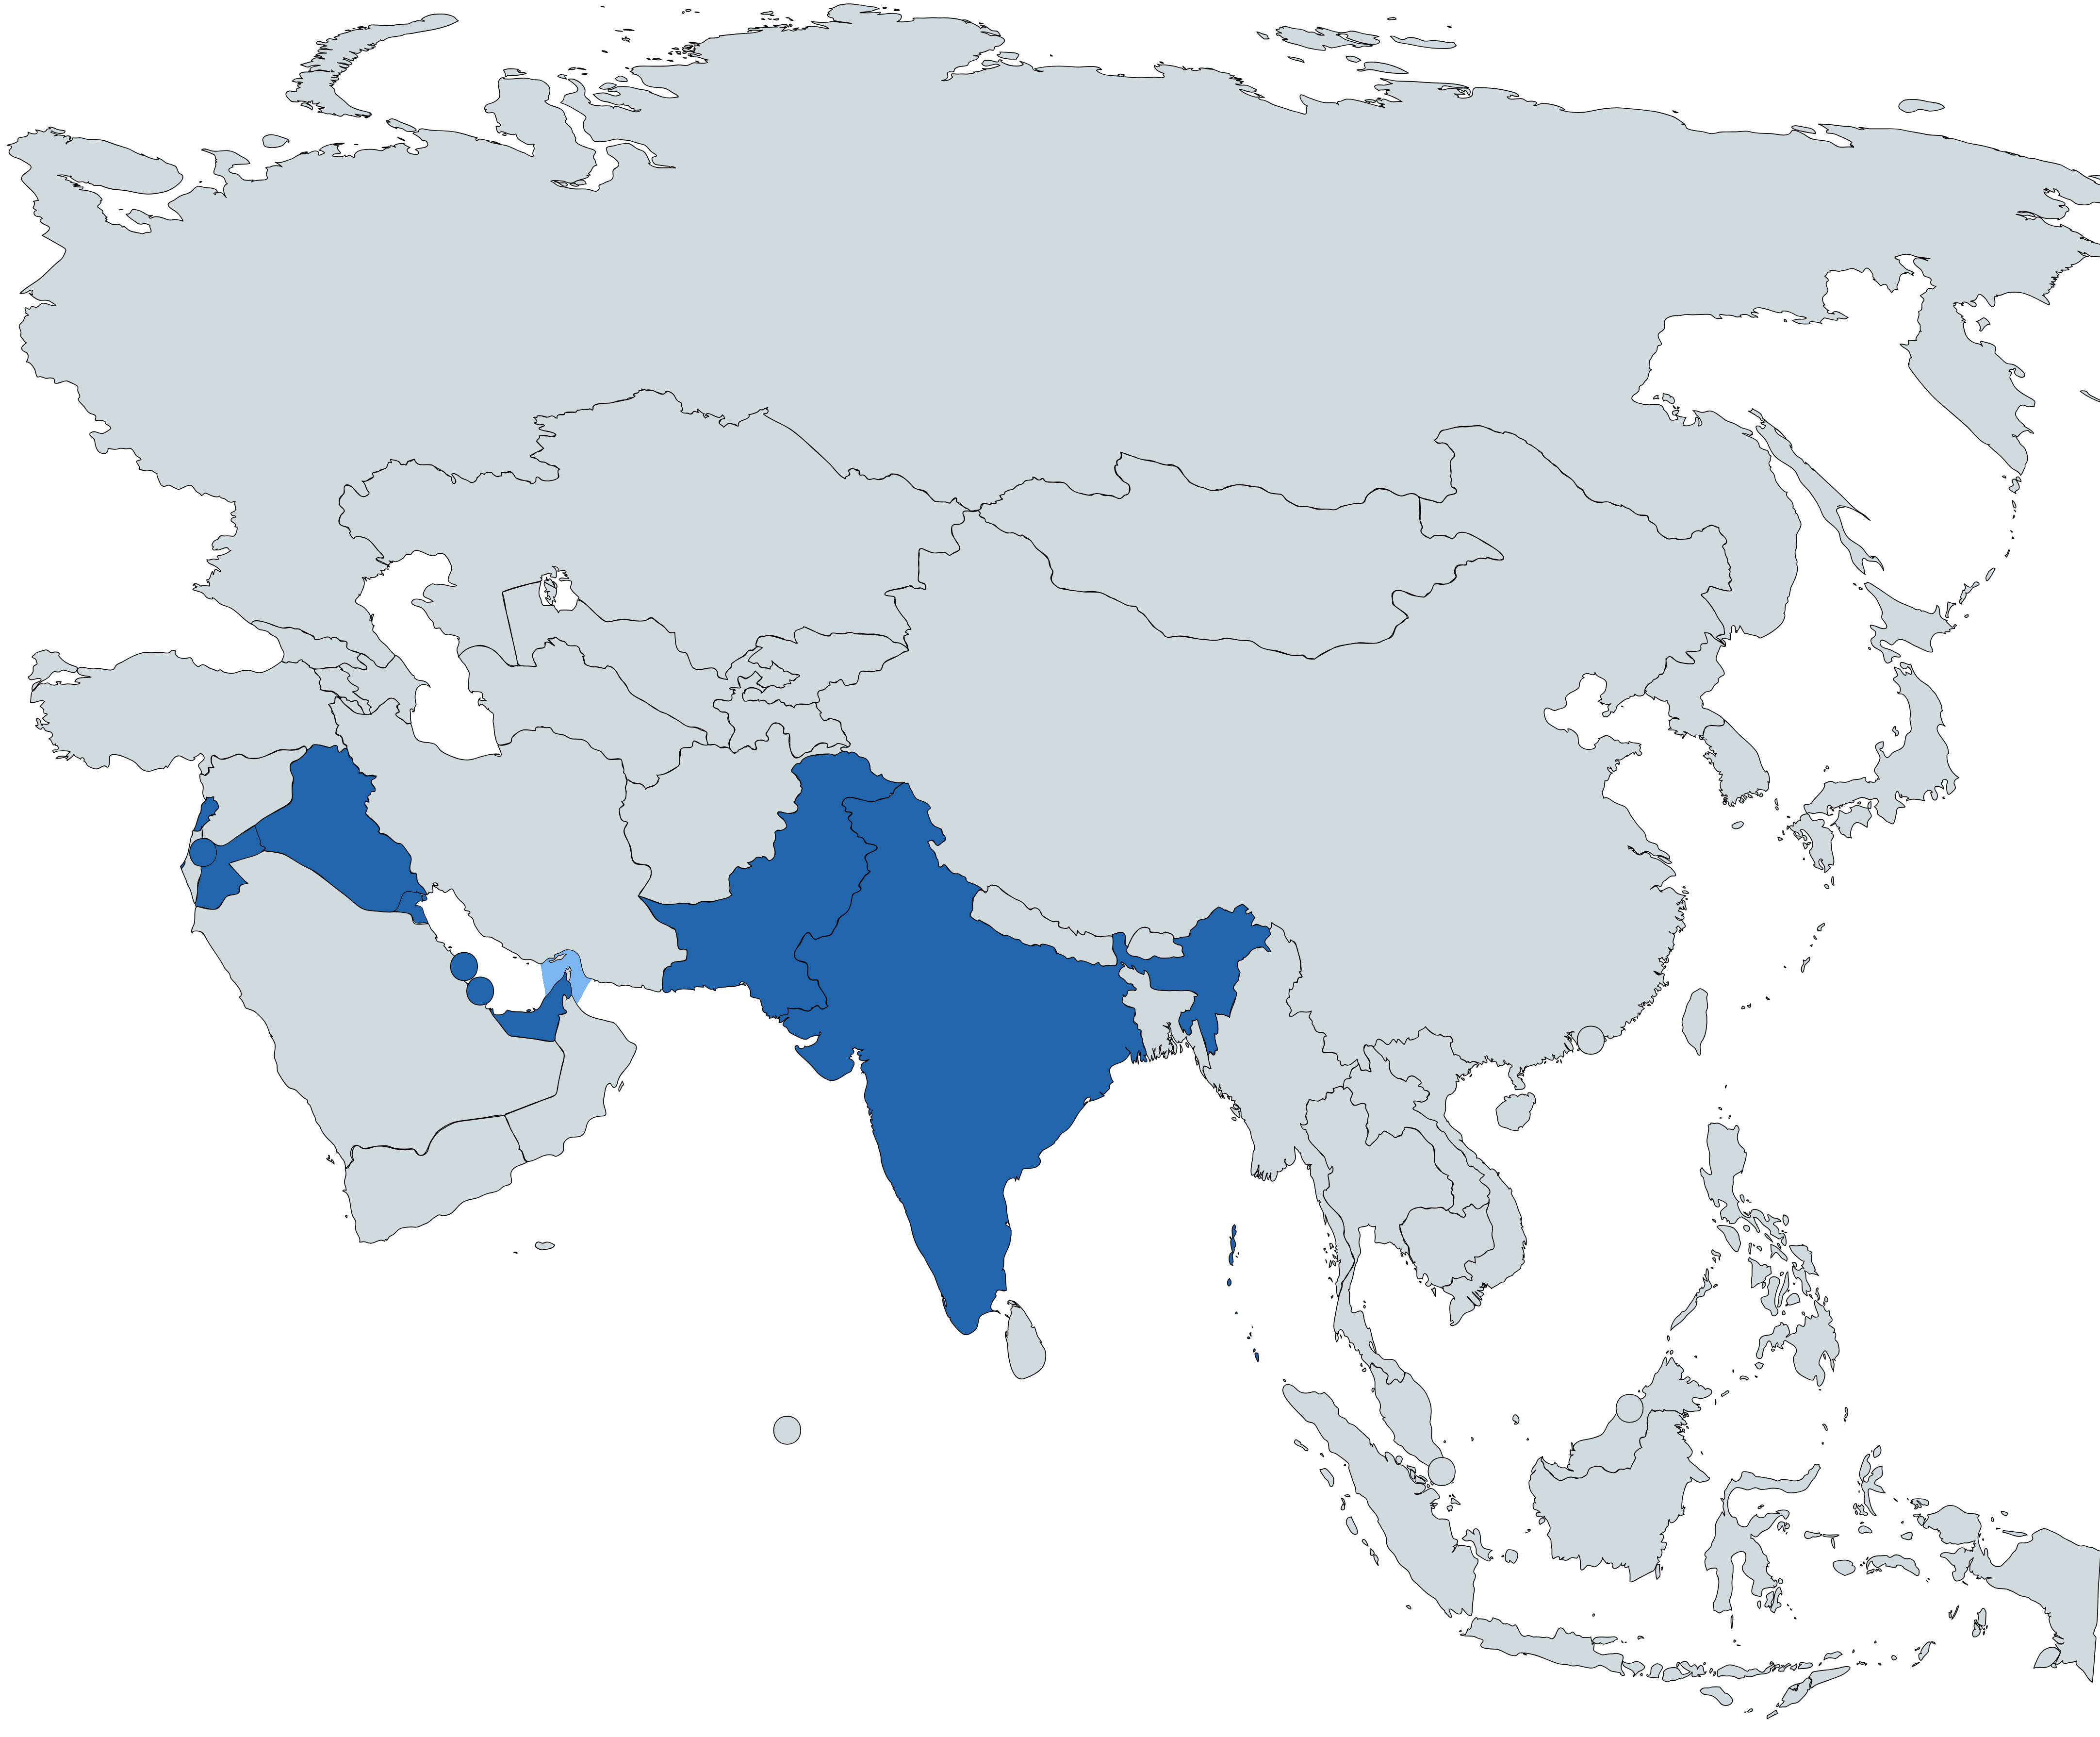 In blu i Paesi asiatici dove l'Italia è impegnata in operazioni militari (non solo con la presenza sul terreno). In colore più chiaro le aree di operazioni navali.